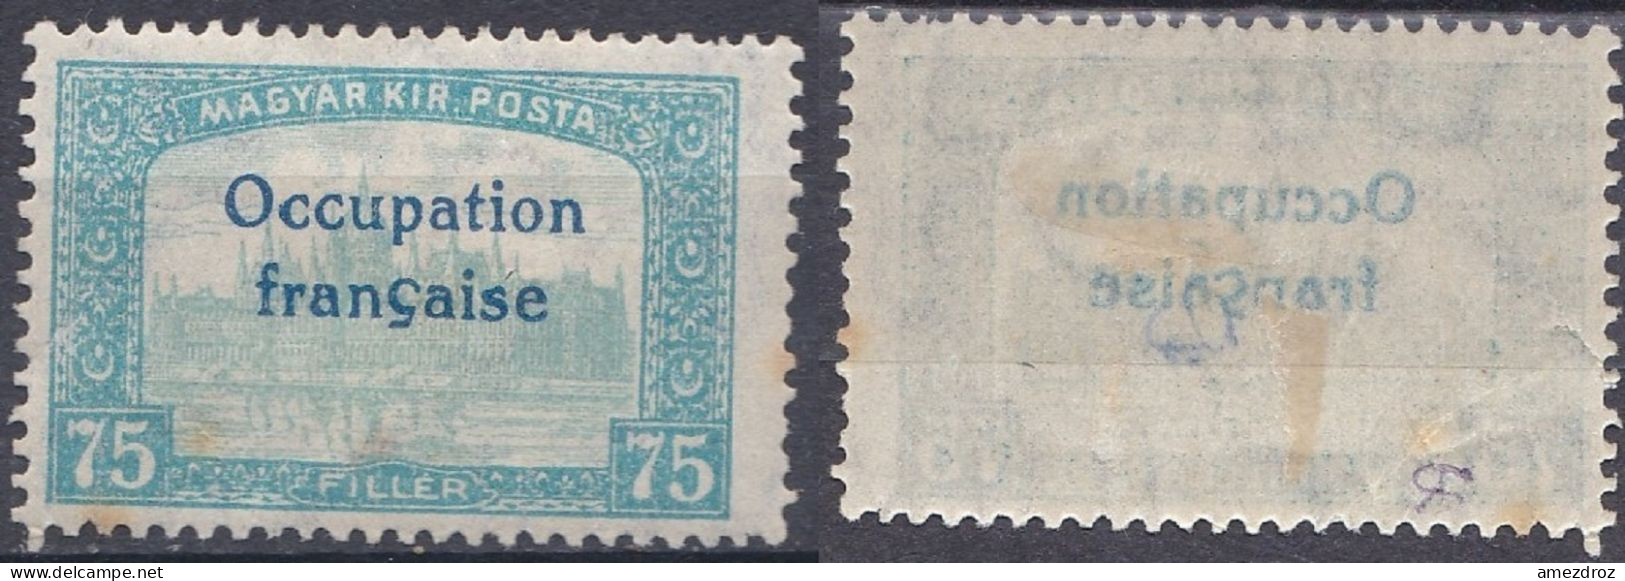 Arad Occupation Française En Hongrie N°19 Palais (K7) Surcharge Imprimée  Recto-verso - Unused Stamps